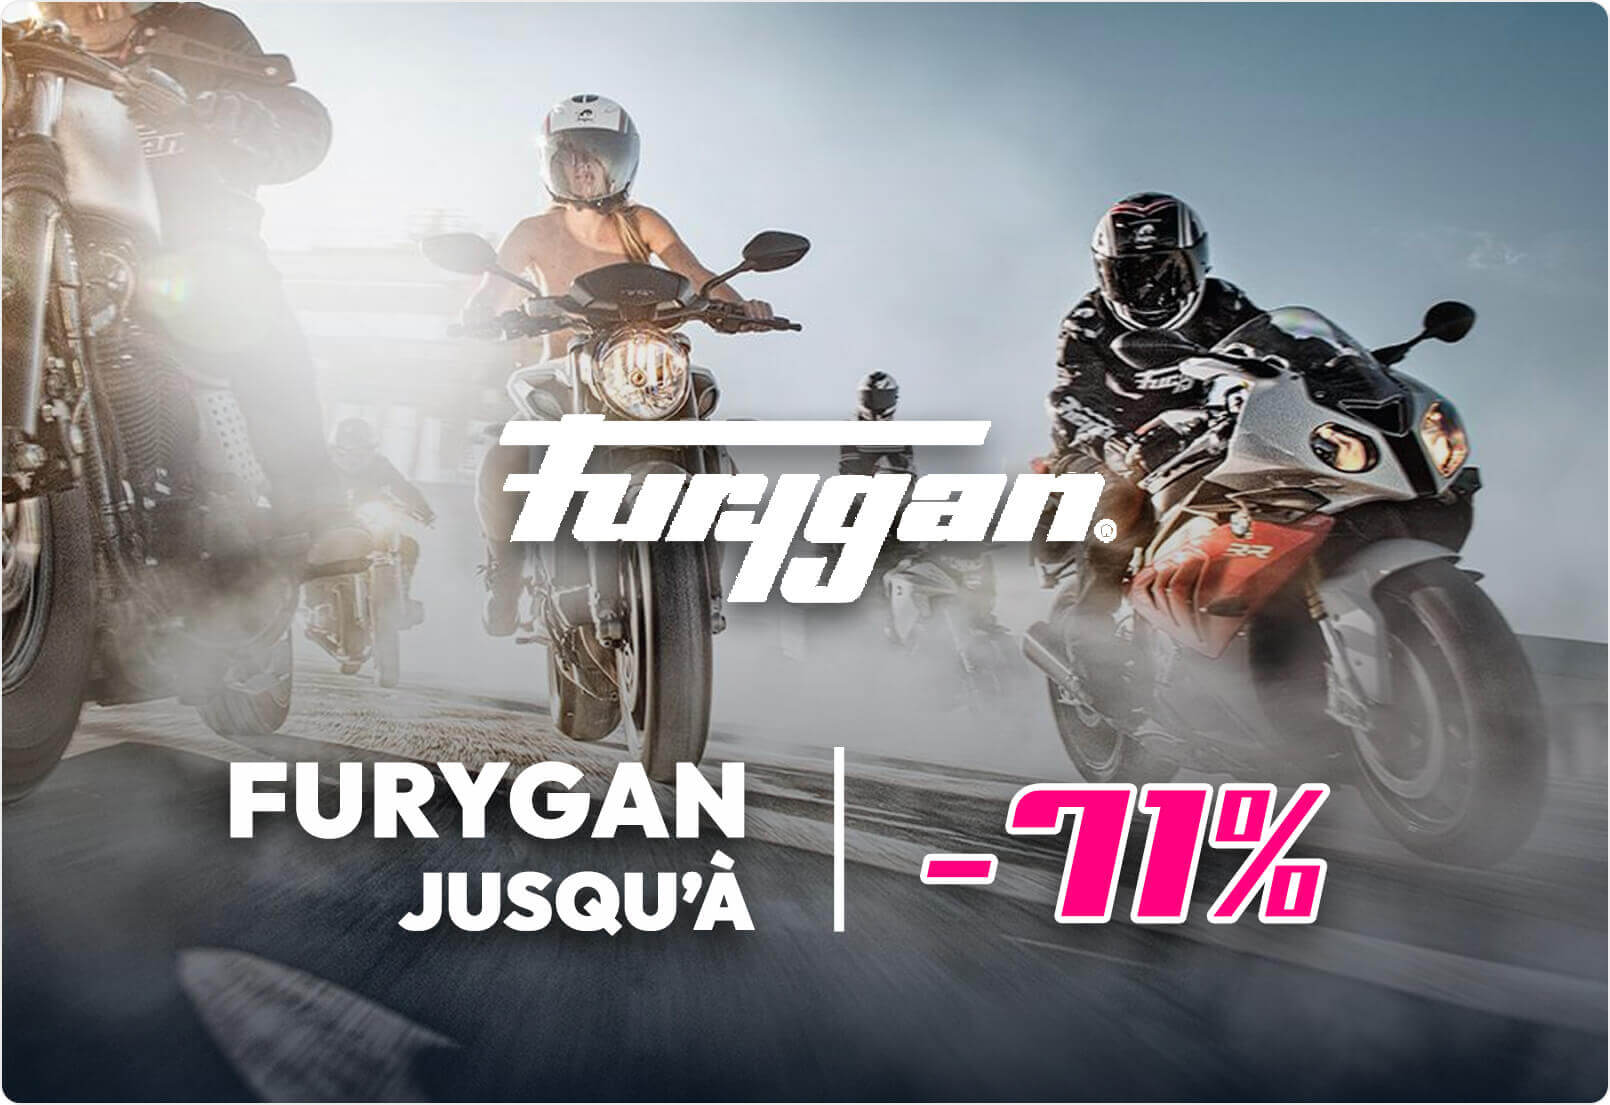 Furygan jusqu'à -71%